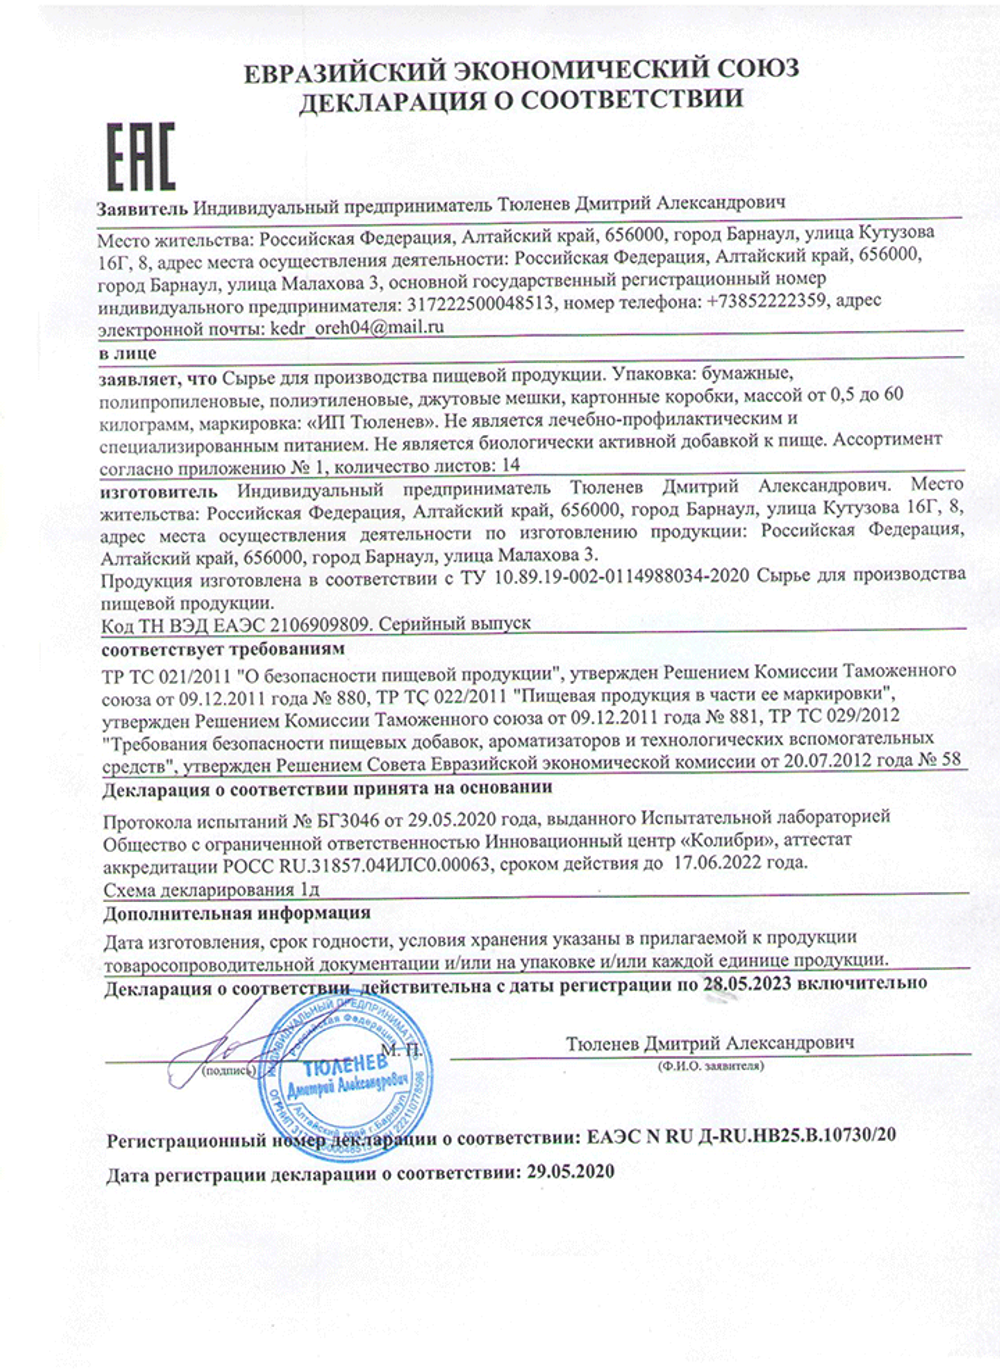 Изображение сертификата соответствия листа смородины чёрной-adonnis.ru